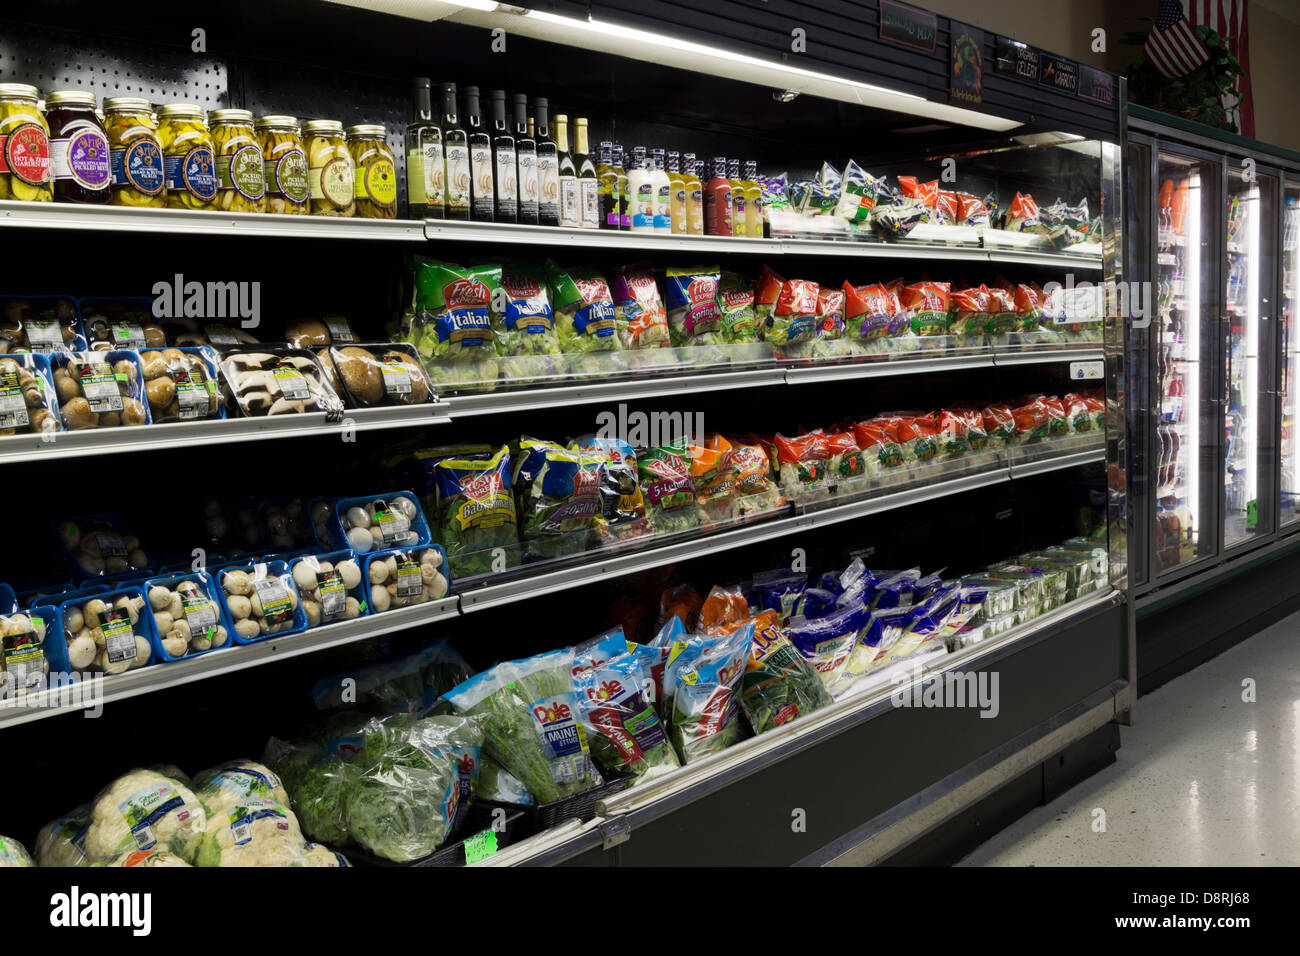 Ingrédients pour salade dans un refroidisseur commercial dans une entreprise familiale d'épicerie. Banque D'Images